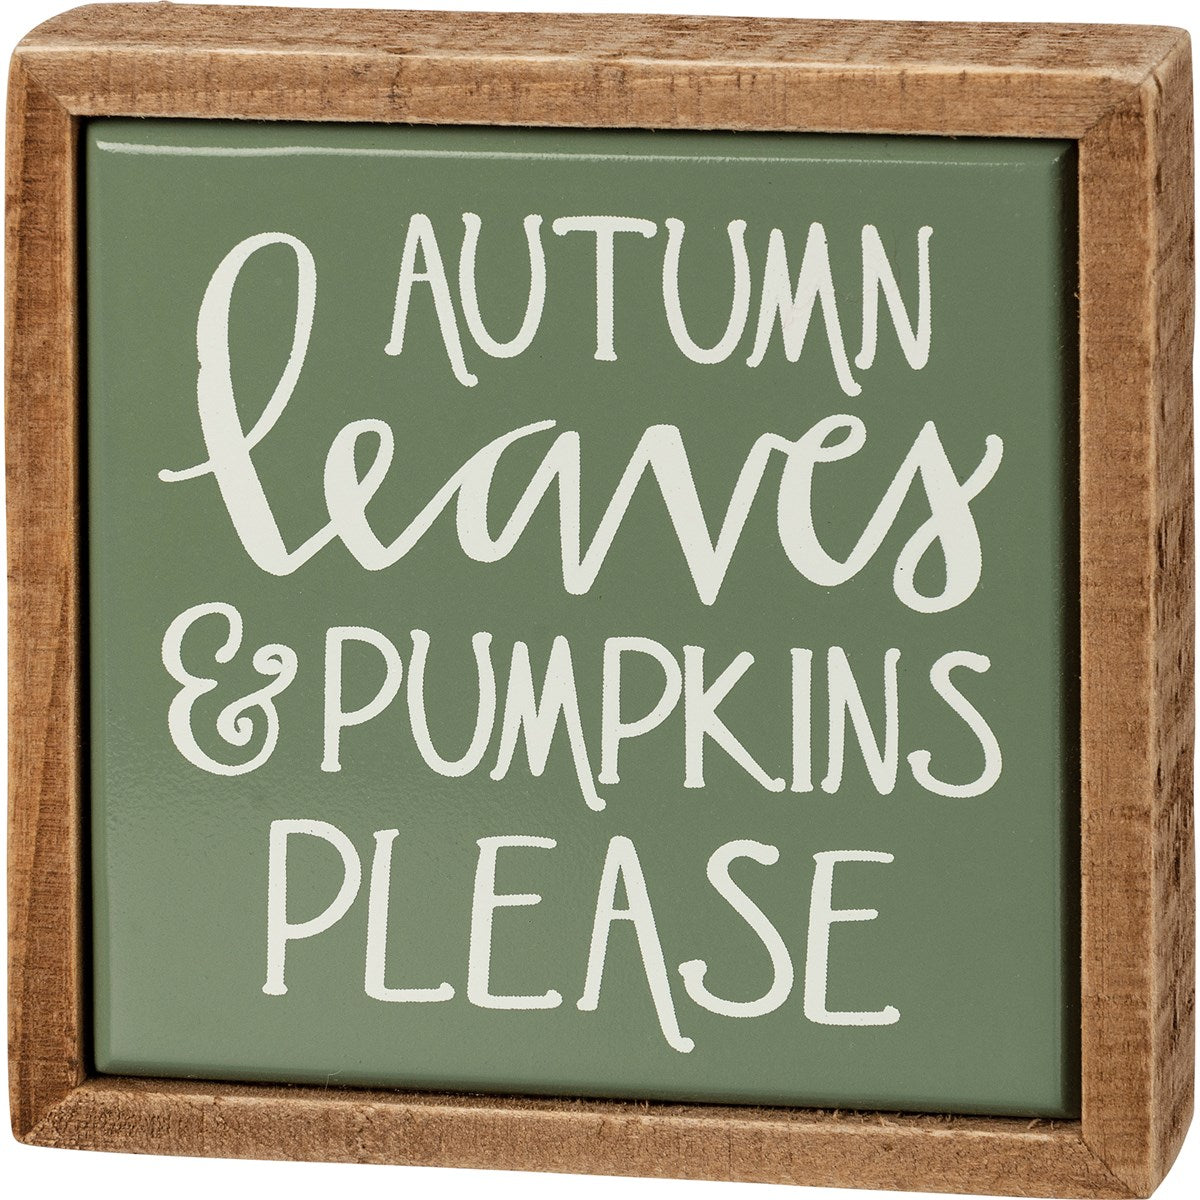 Autumn Leaves & Pumpkins Please Mini Box Sign - Little Prairie Girl